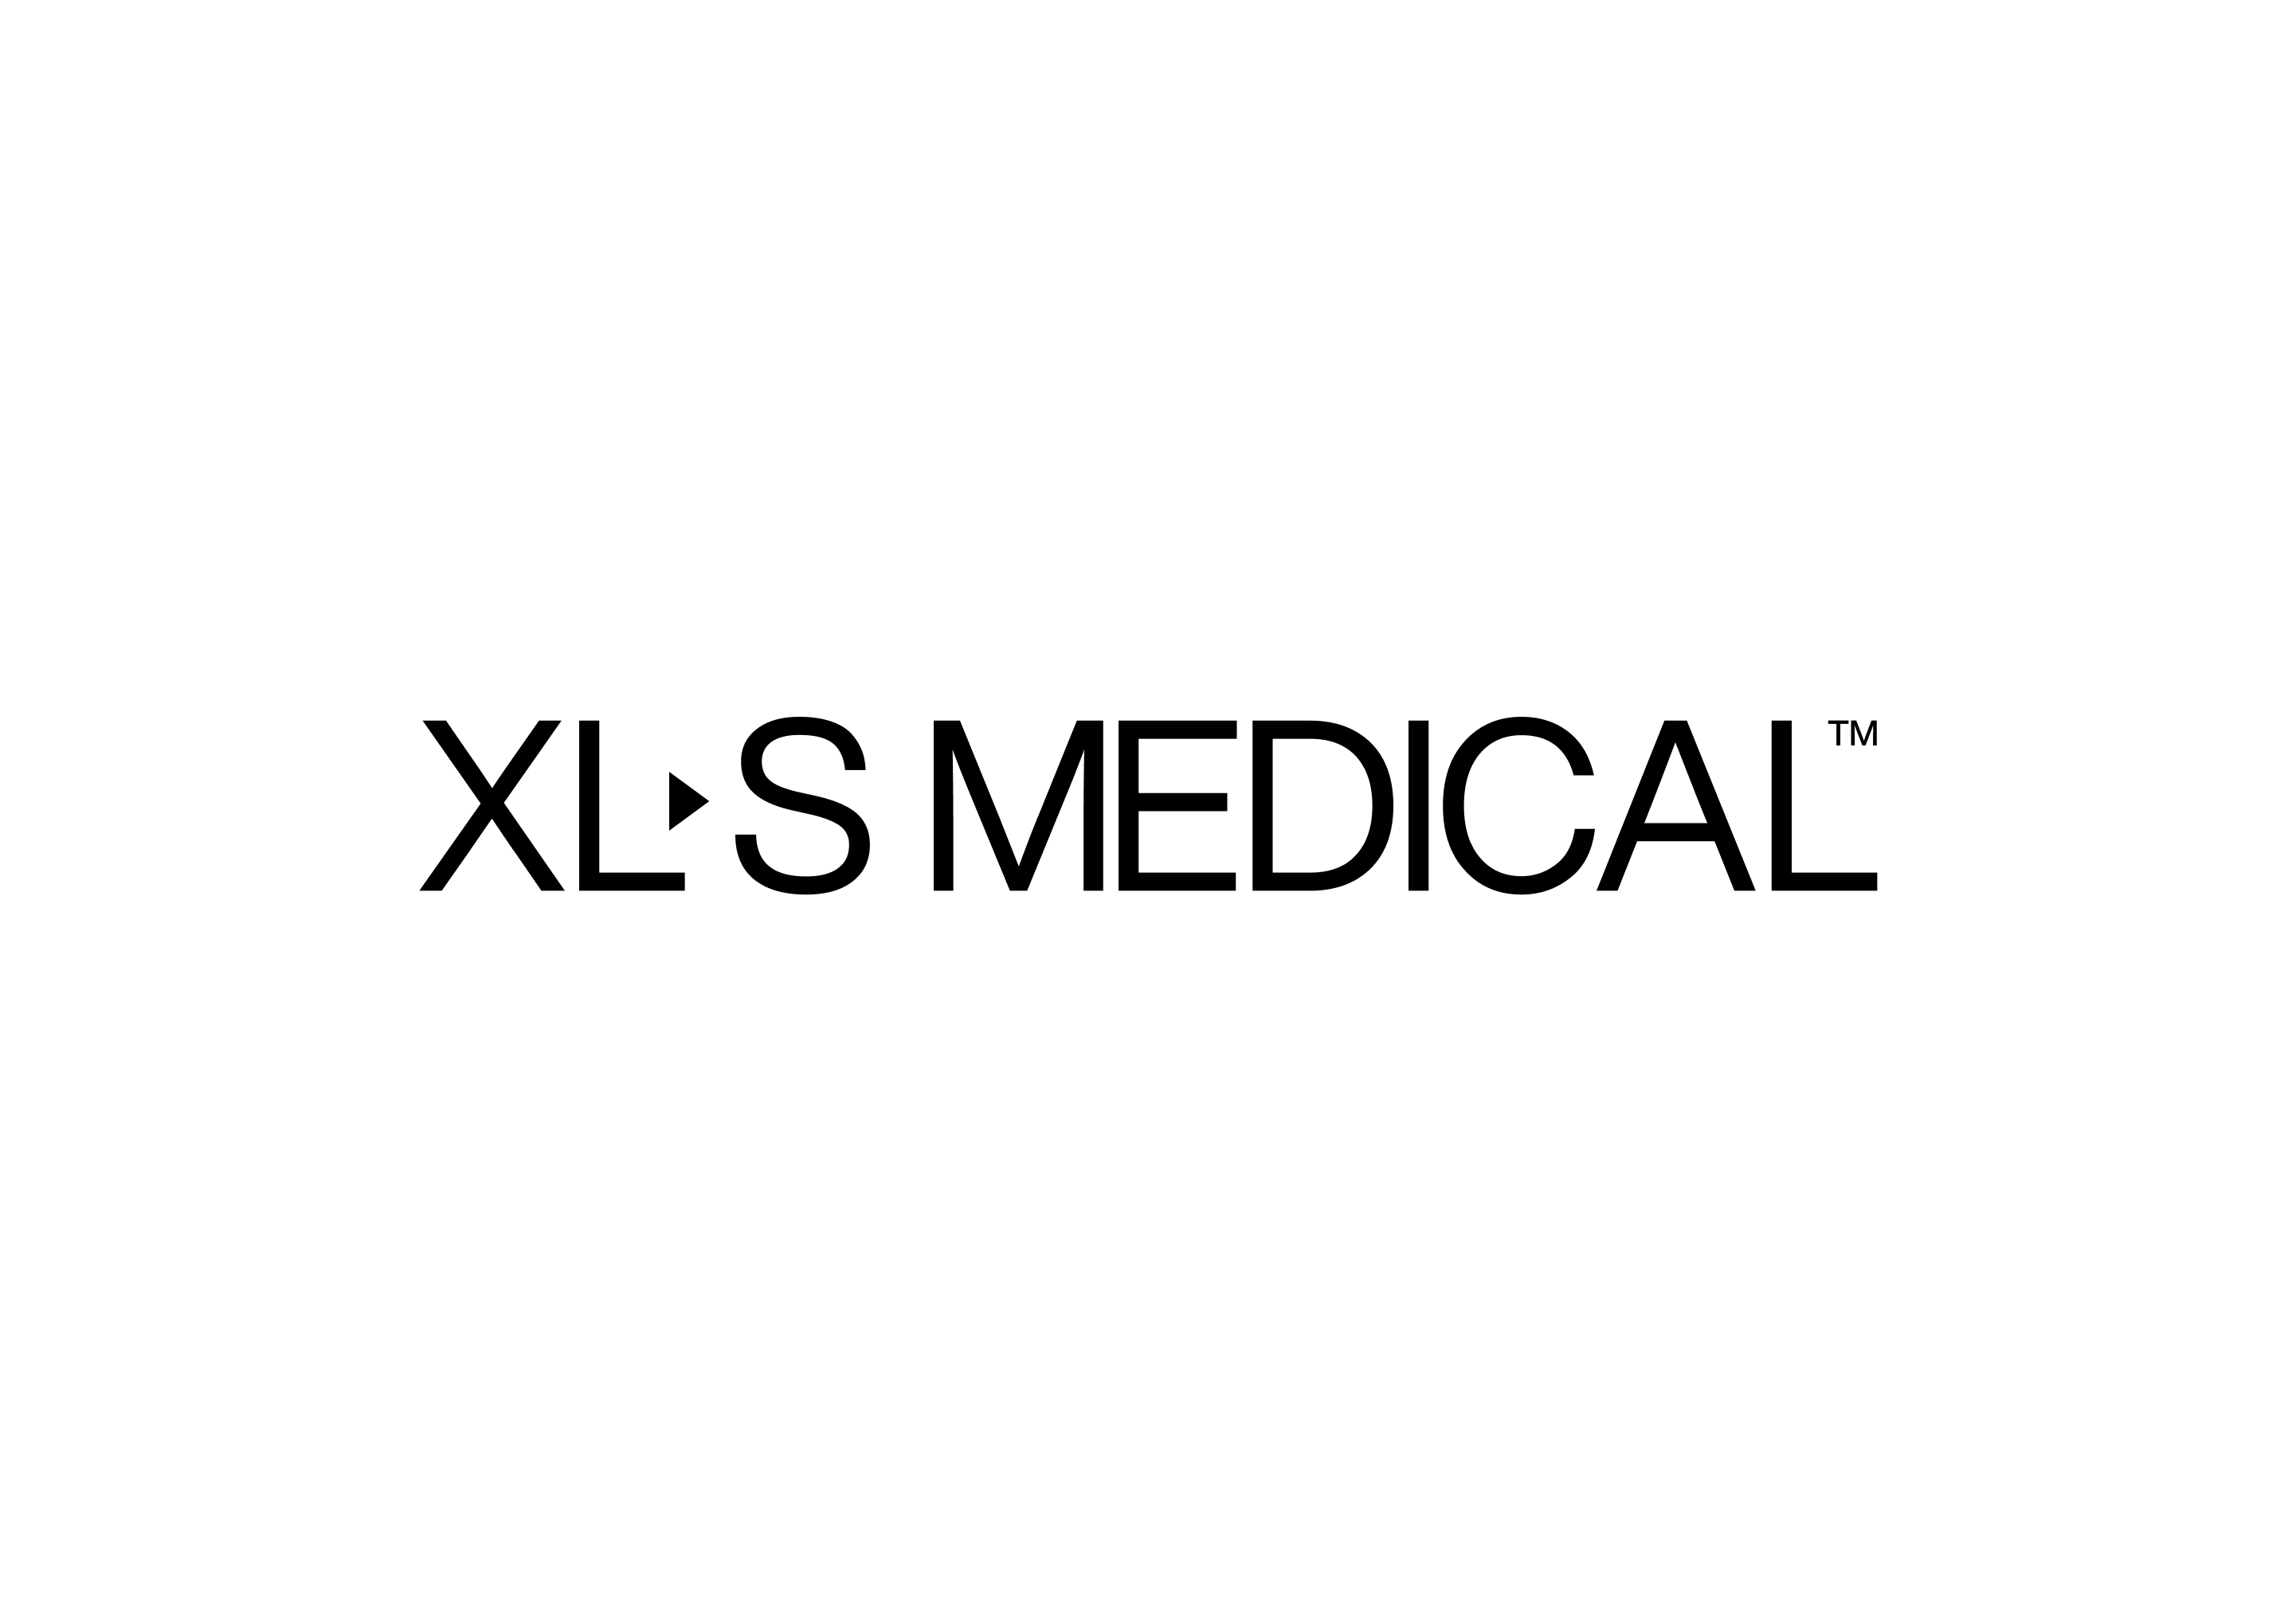 XLS-Logo